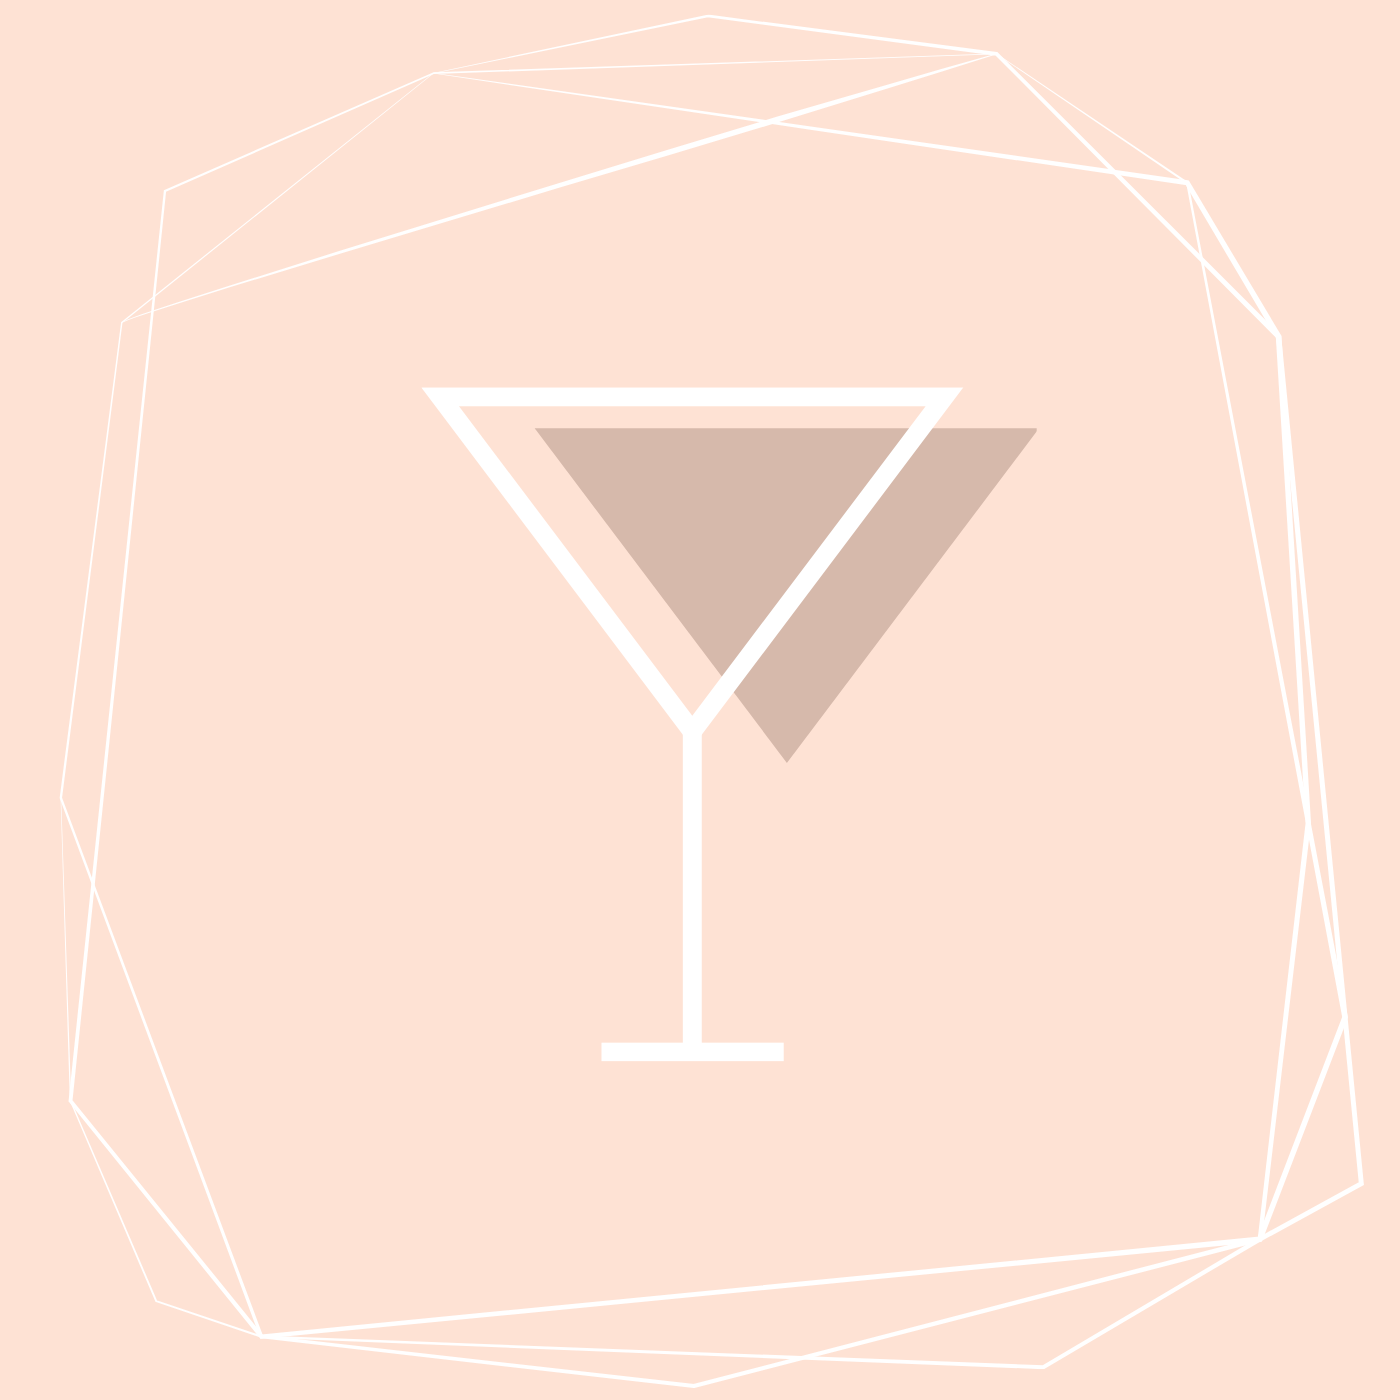 Cocktails & Content Creation